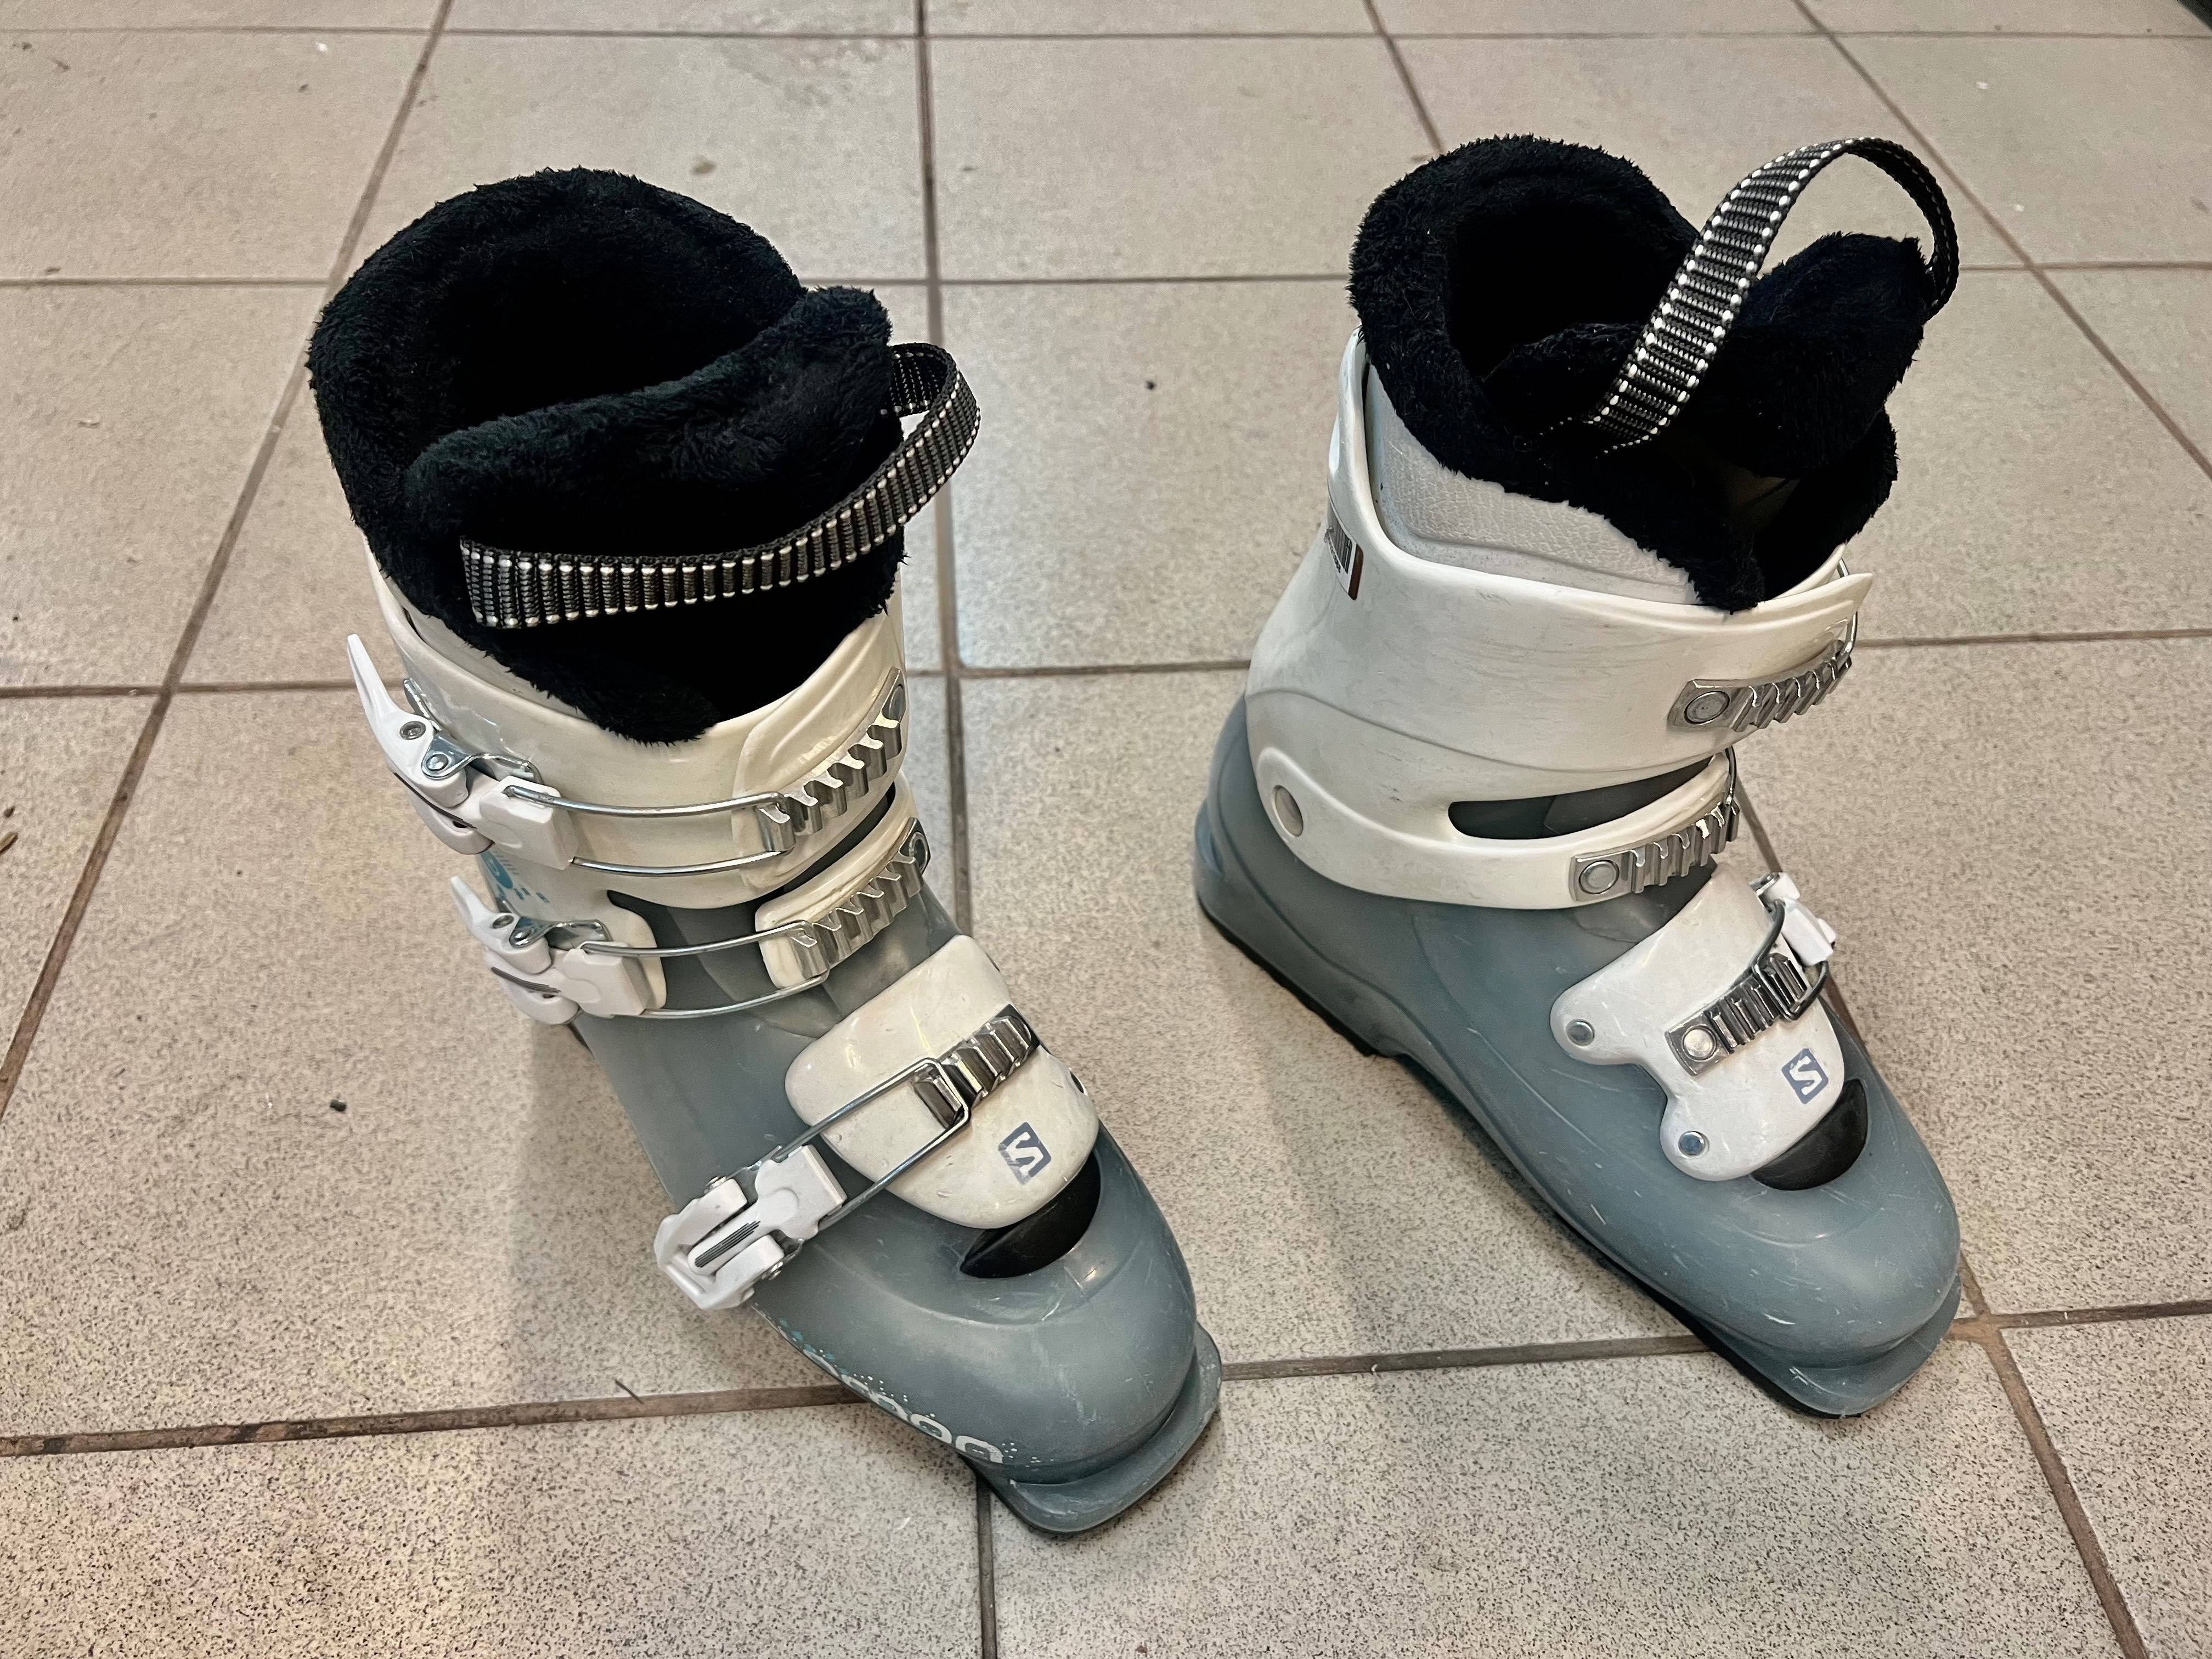 Buty narciarskie Salomon T3